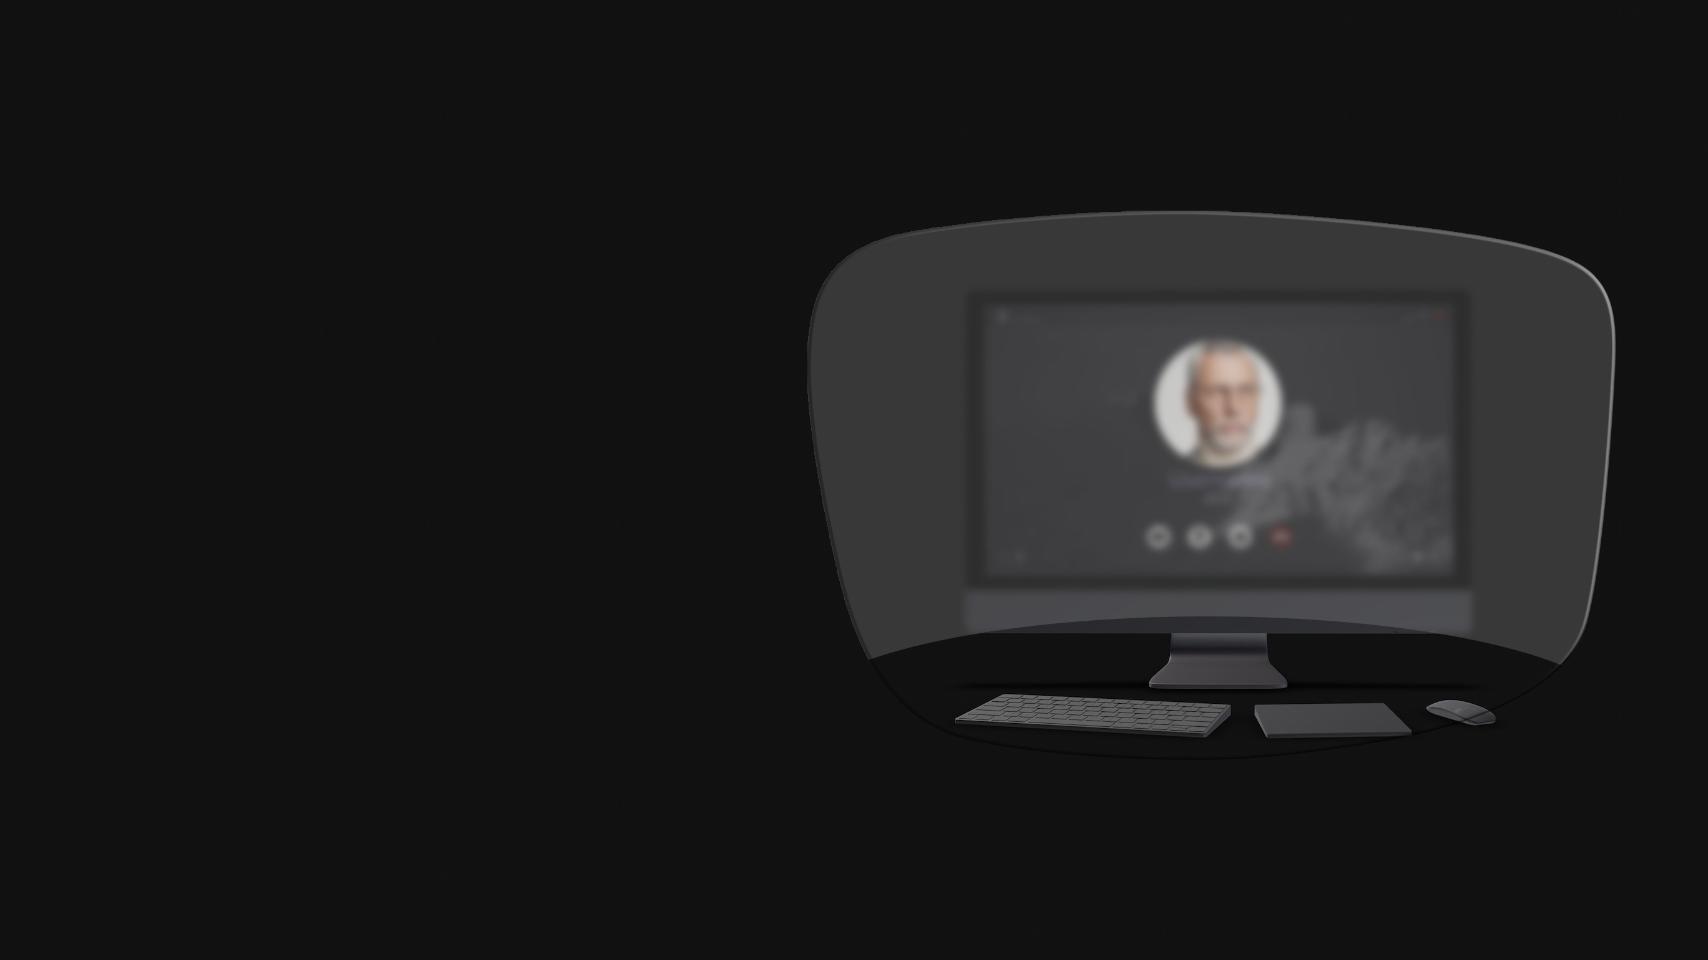 La vista di un computer desktop, di una tastiera, di un mouse e di un libro attraverso un&apos;illustrazione schematica di occhiali da lettura mostra che solo gli oggetti molto vicini sono chiaramente visibili. Lo schermo del computer è sfocato.